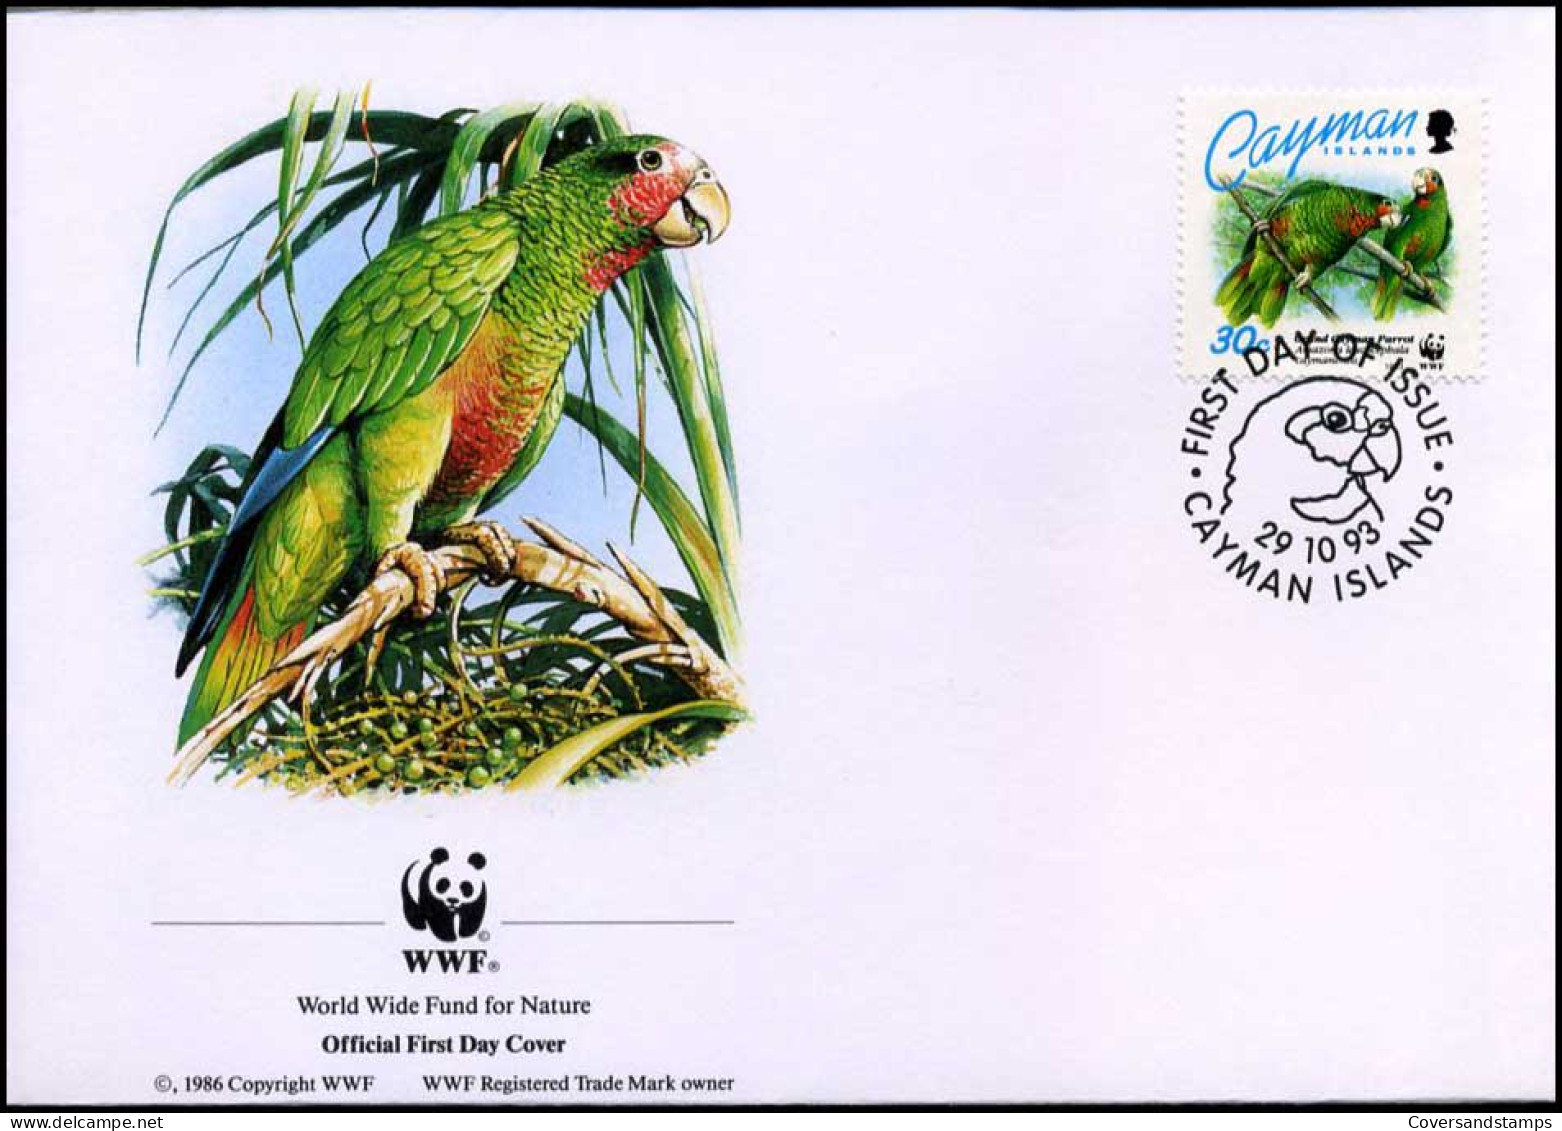 Cayman Islands - FDC - Wilde Dieren / Wild Animals - FDC